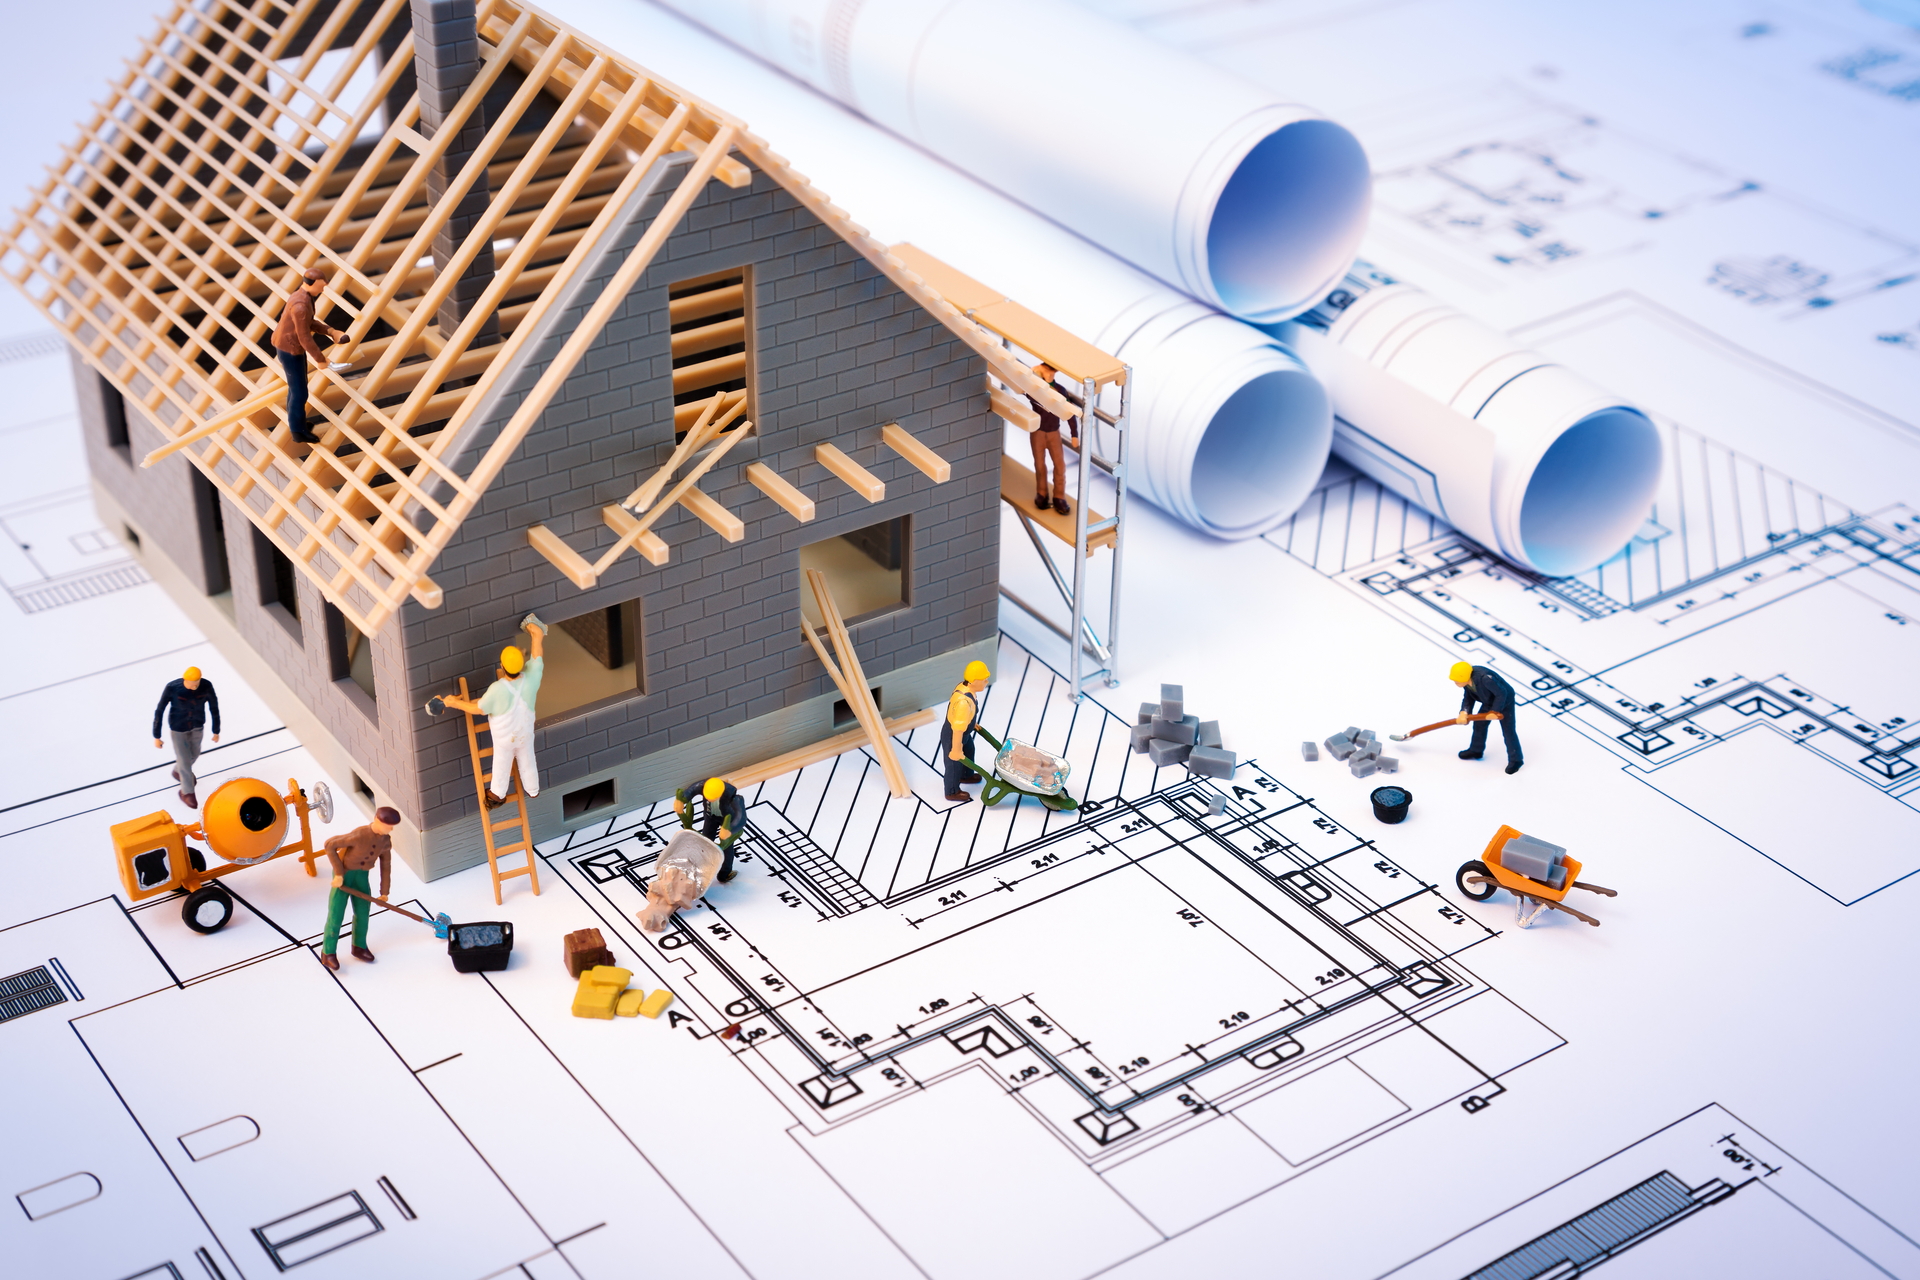 Kỹ sư giàu kinh nghiệm hướng dẫn 7 bước cần chuẩn bị khi xây nhà để việc xây dựng luôn thuận lợi - Ảnh 3